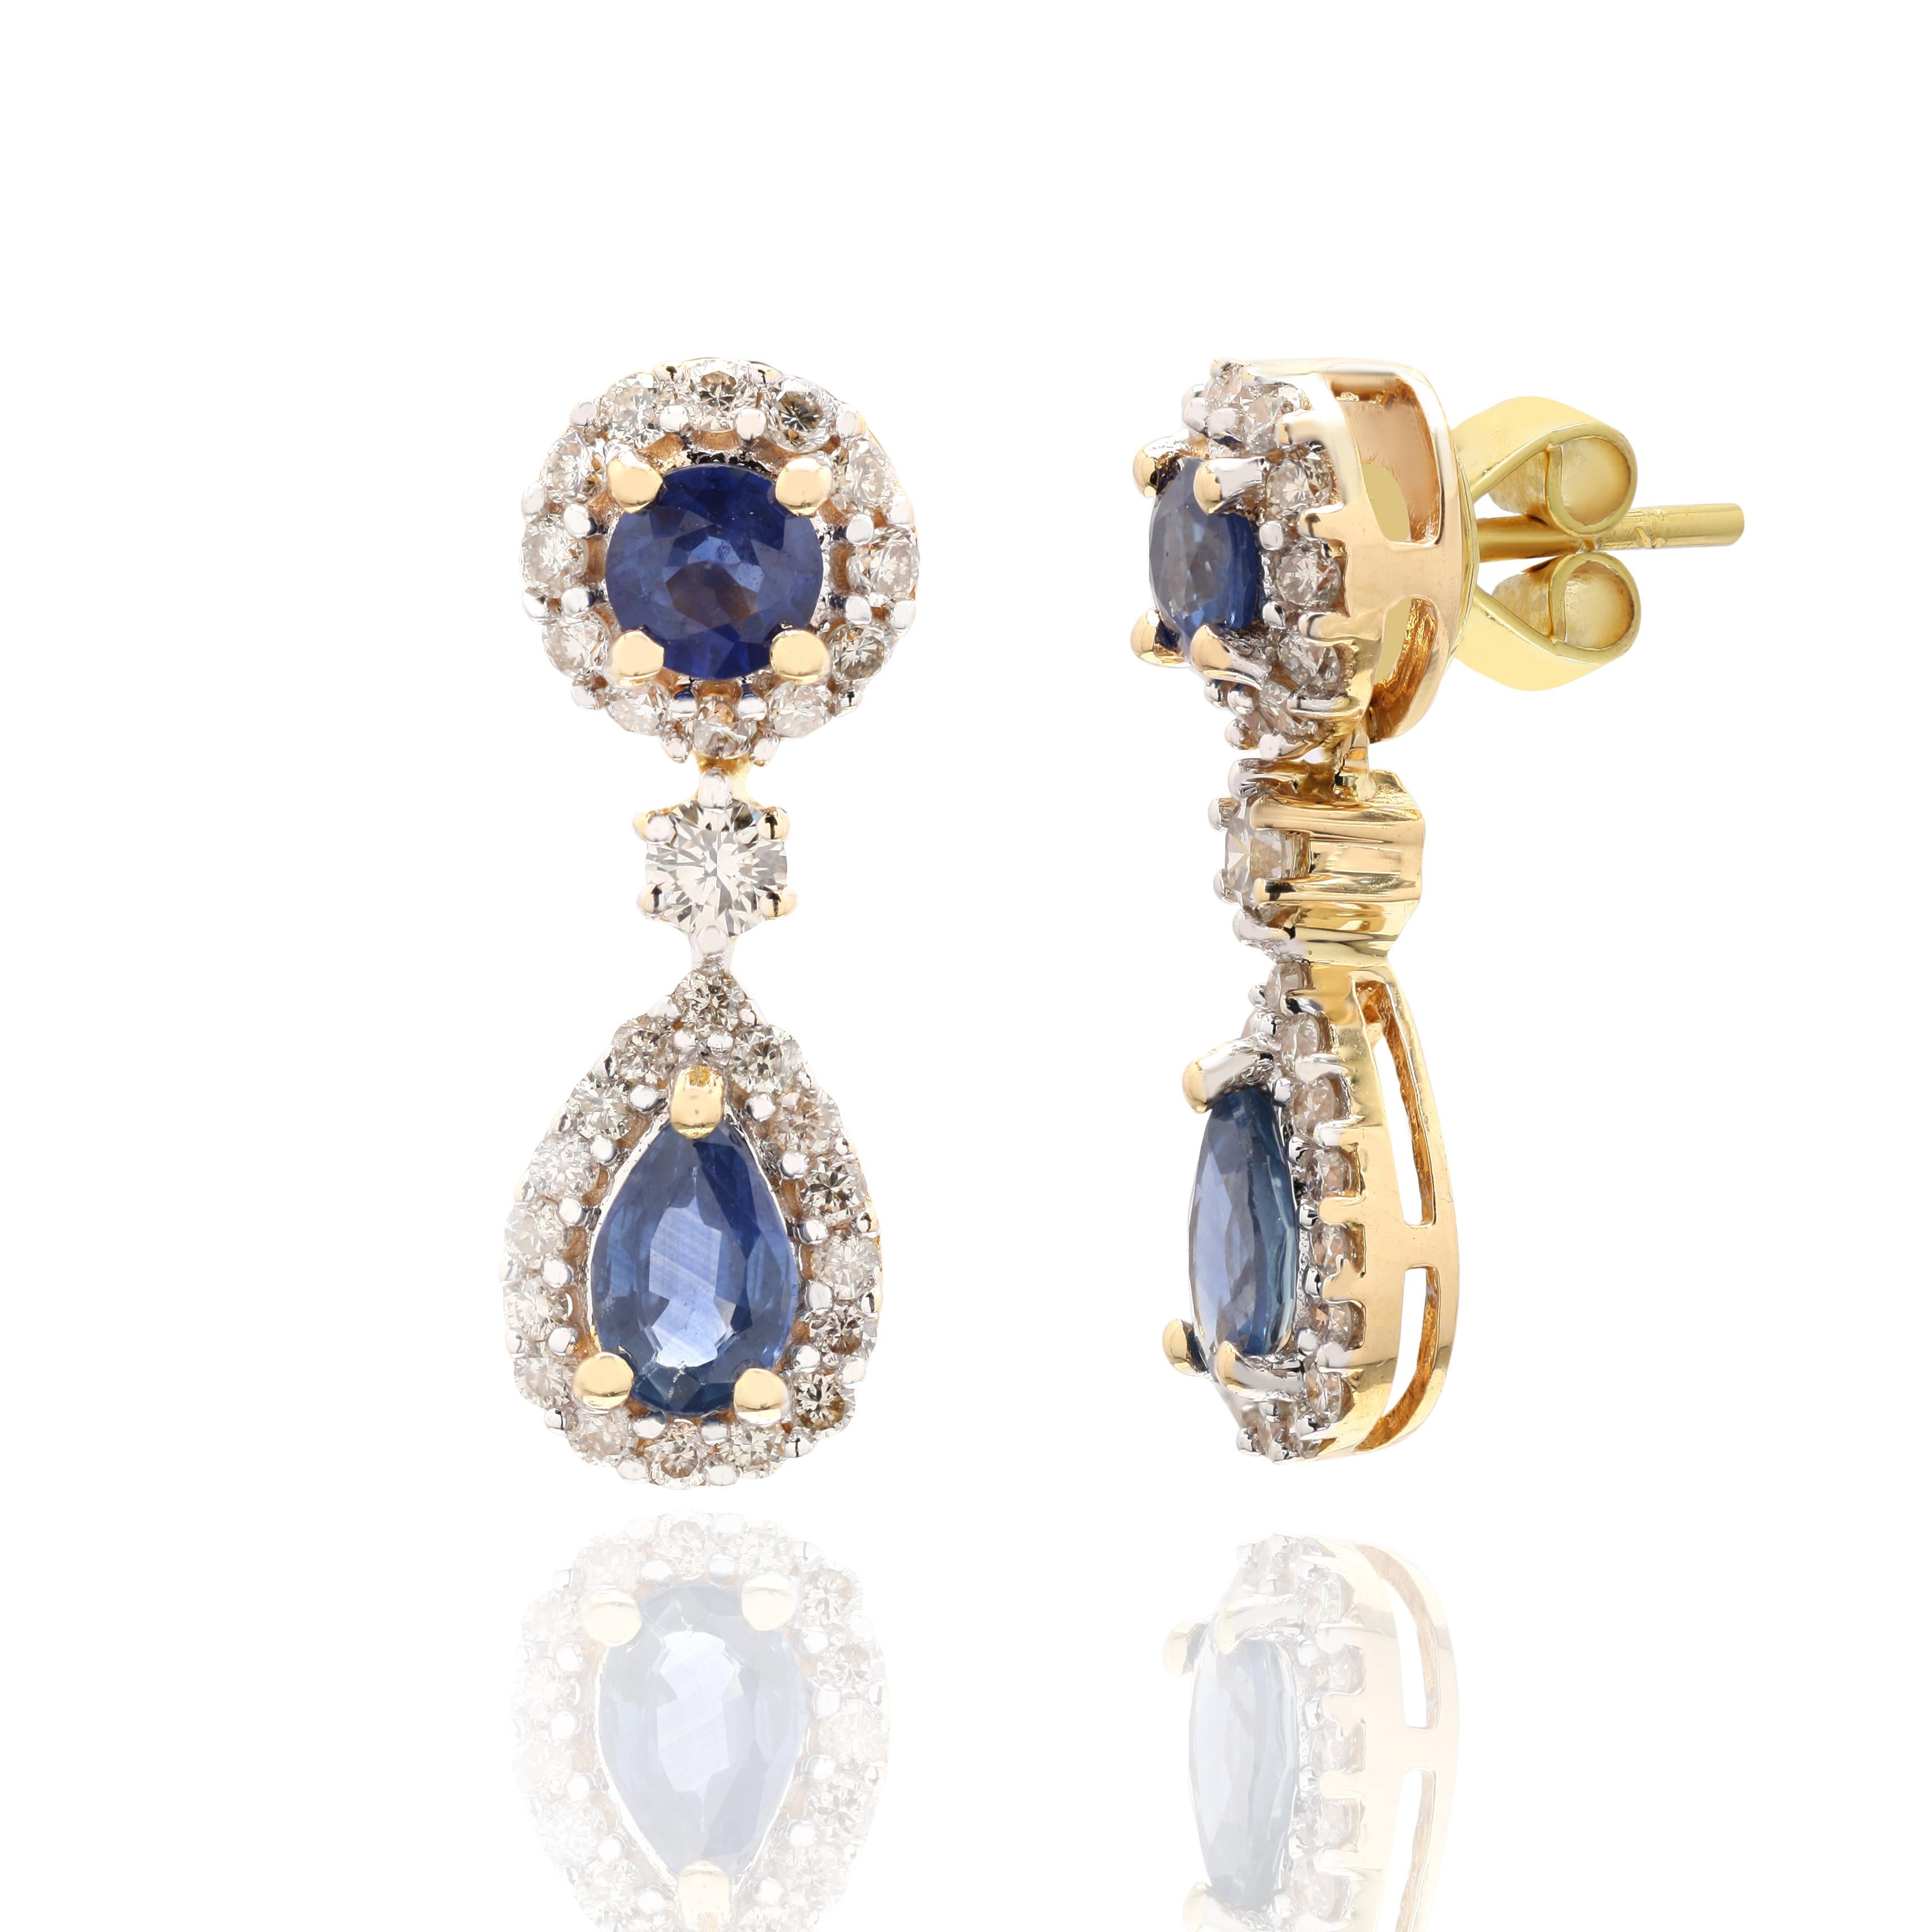 Les boucles d'oreilles pendantes en or 18 carats avec diamant et saphir bleu vous permettront d'affirmer votre look. Ces boucles d'oreilles créent un look étincelant et luxueux avec des pierres précieuses de taille ronde et ovale.
Le saphir stimule